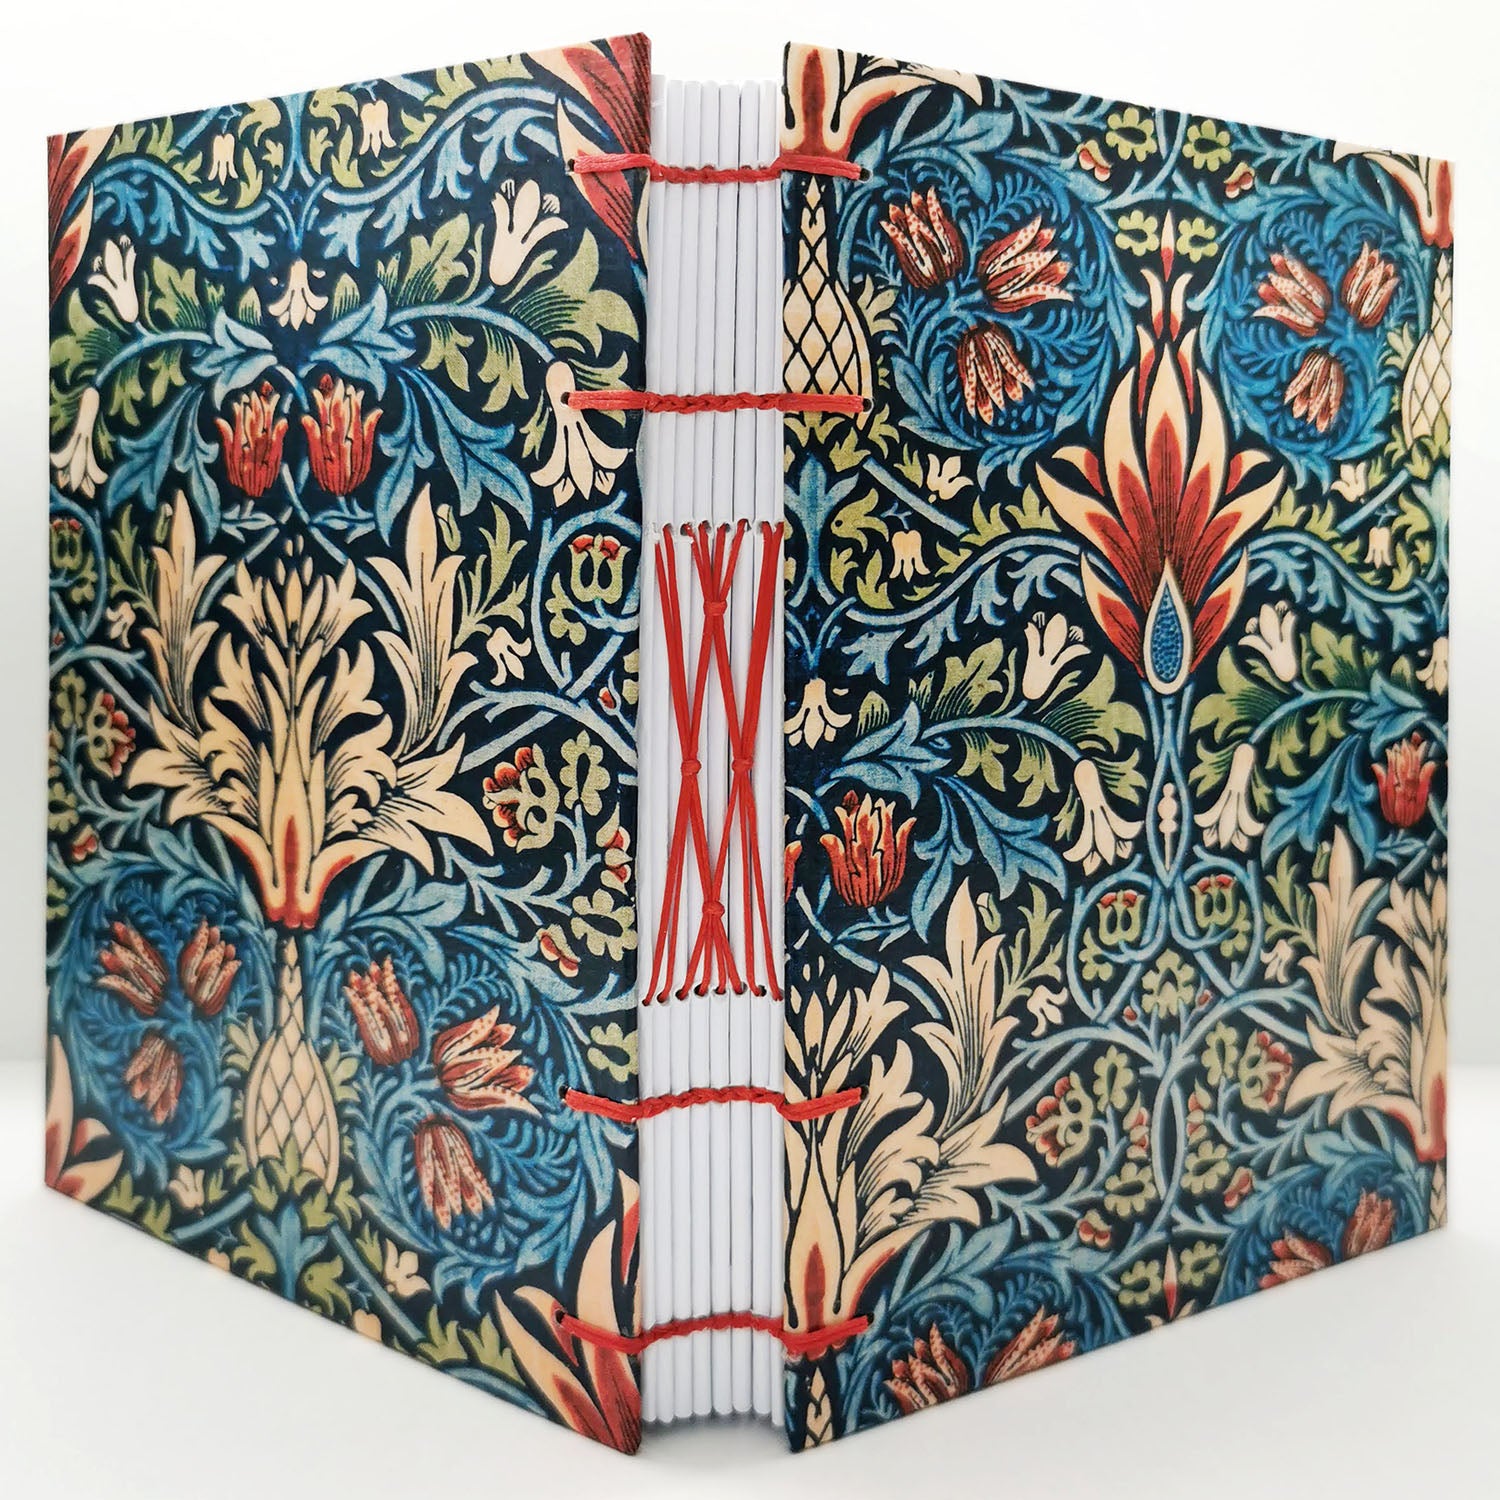 Χειροποίητo Σημειωματάριo με Βυζαντινή Βιβλιοδεσία - William Morris - Snakeshead pattern